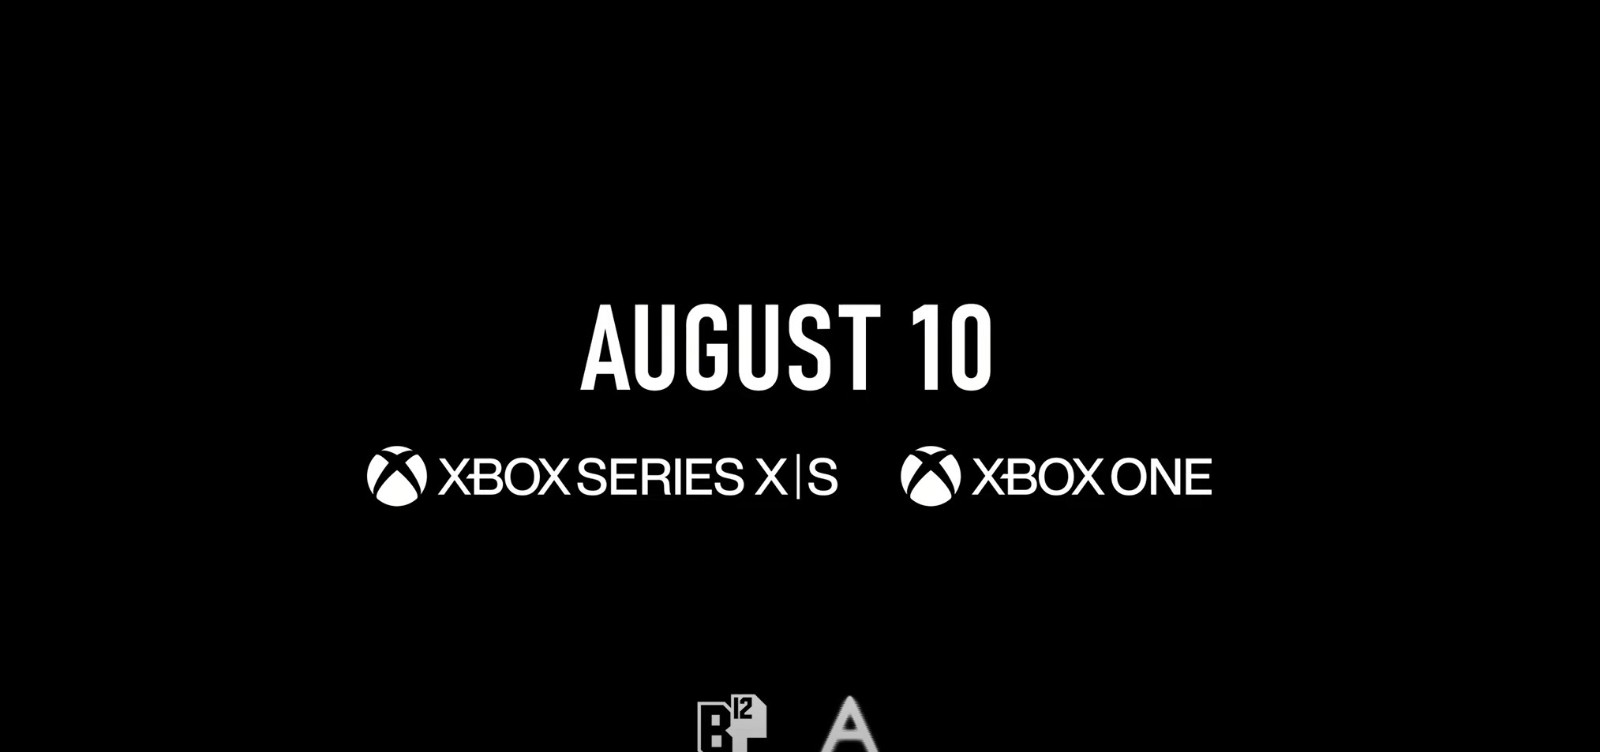 好評遊戲《迷失》將於8月10日登陸Xbox One、Xbox Series X/S